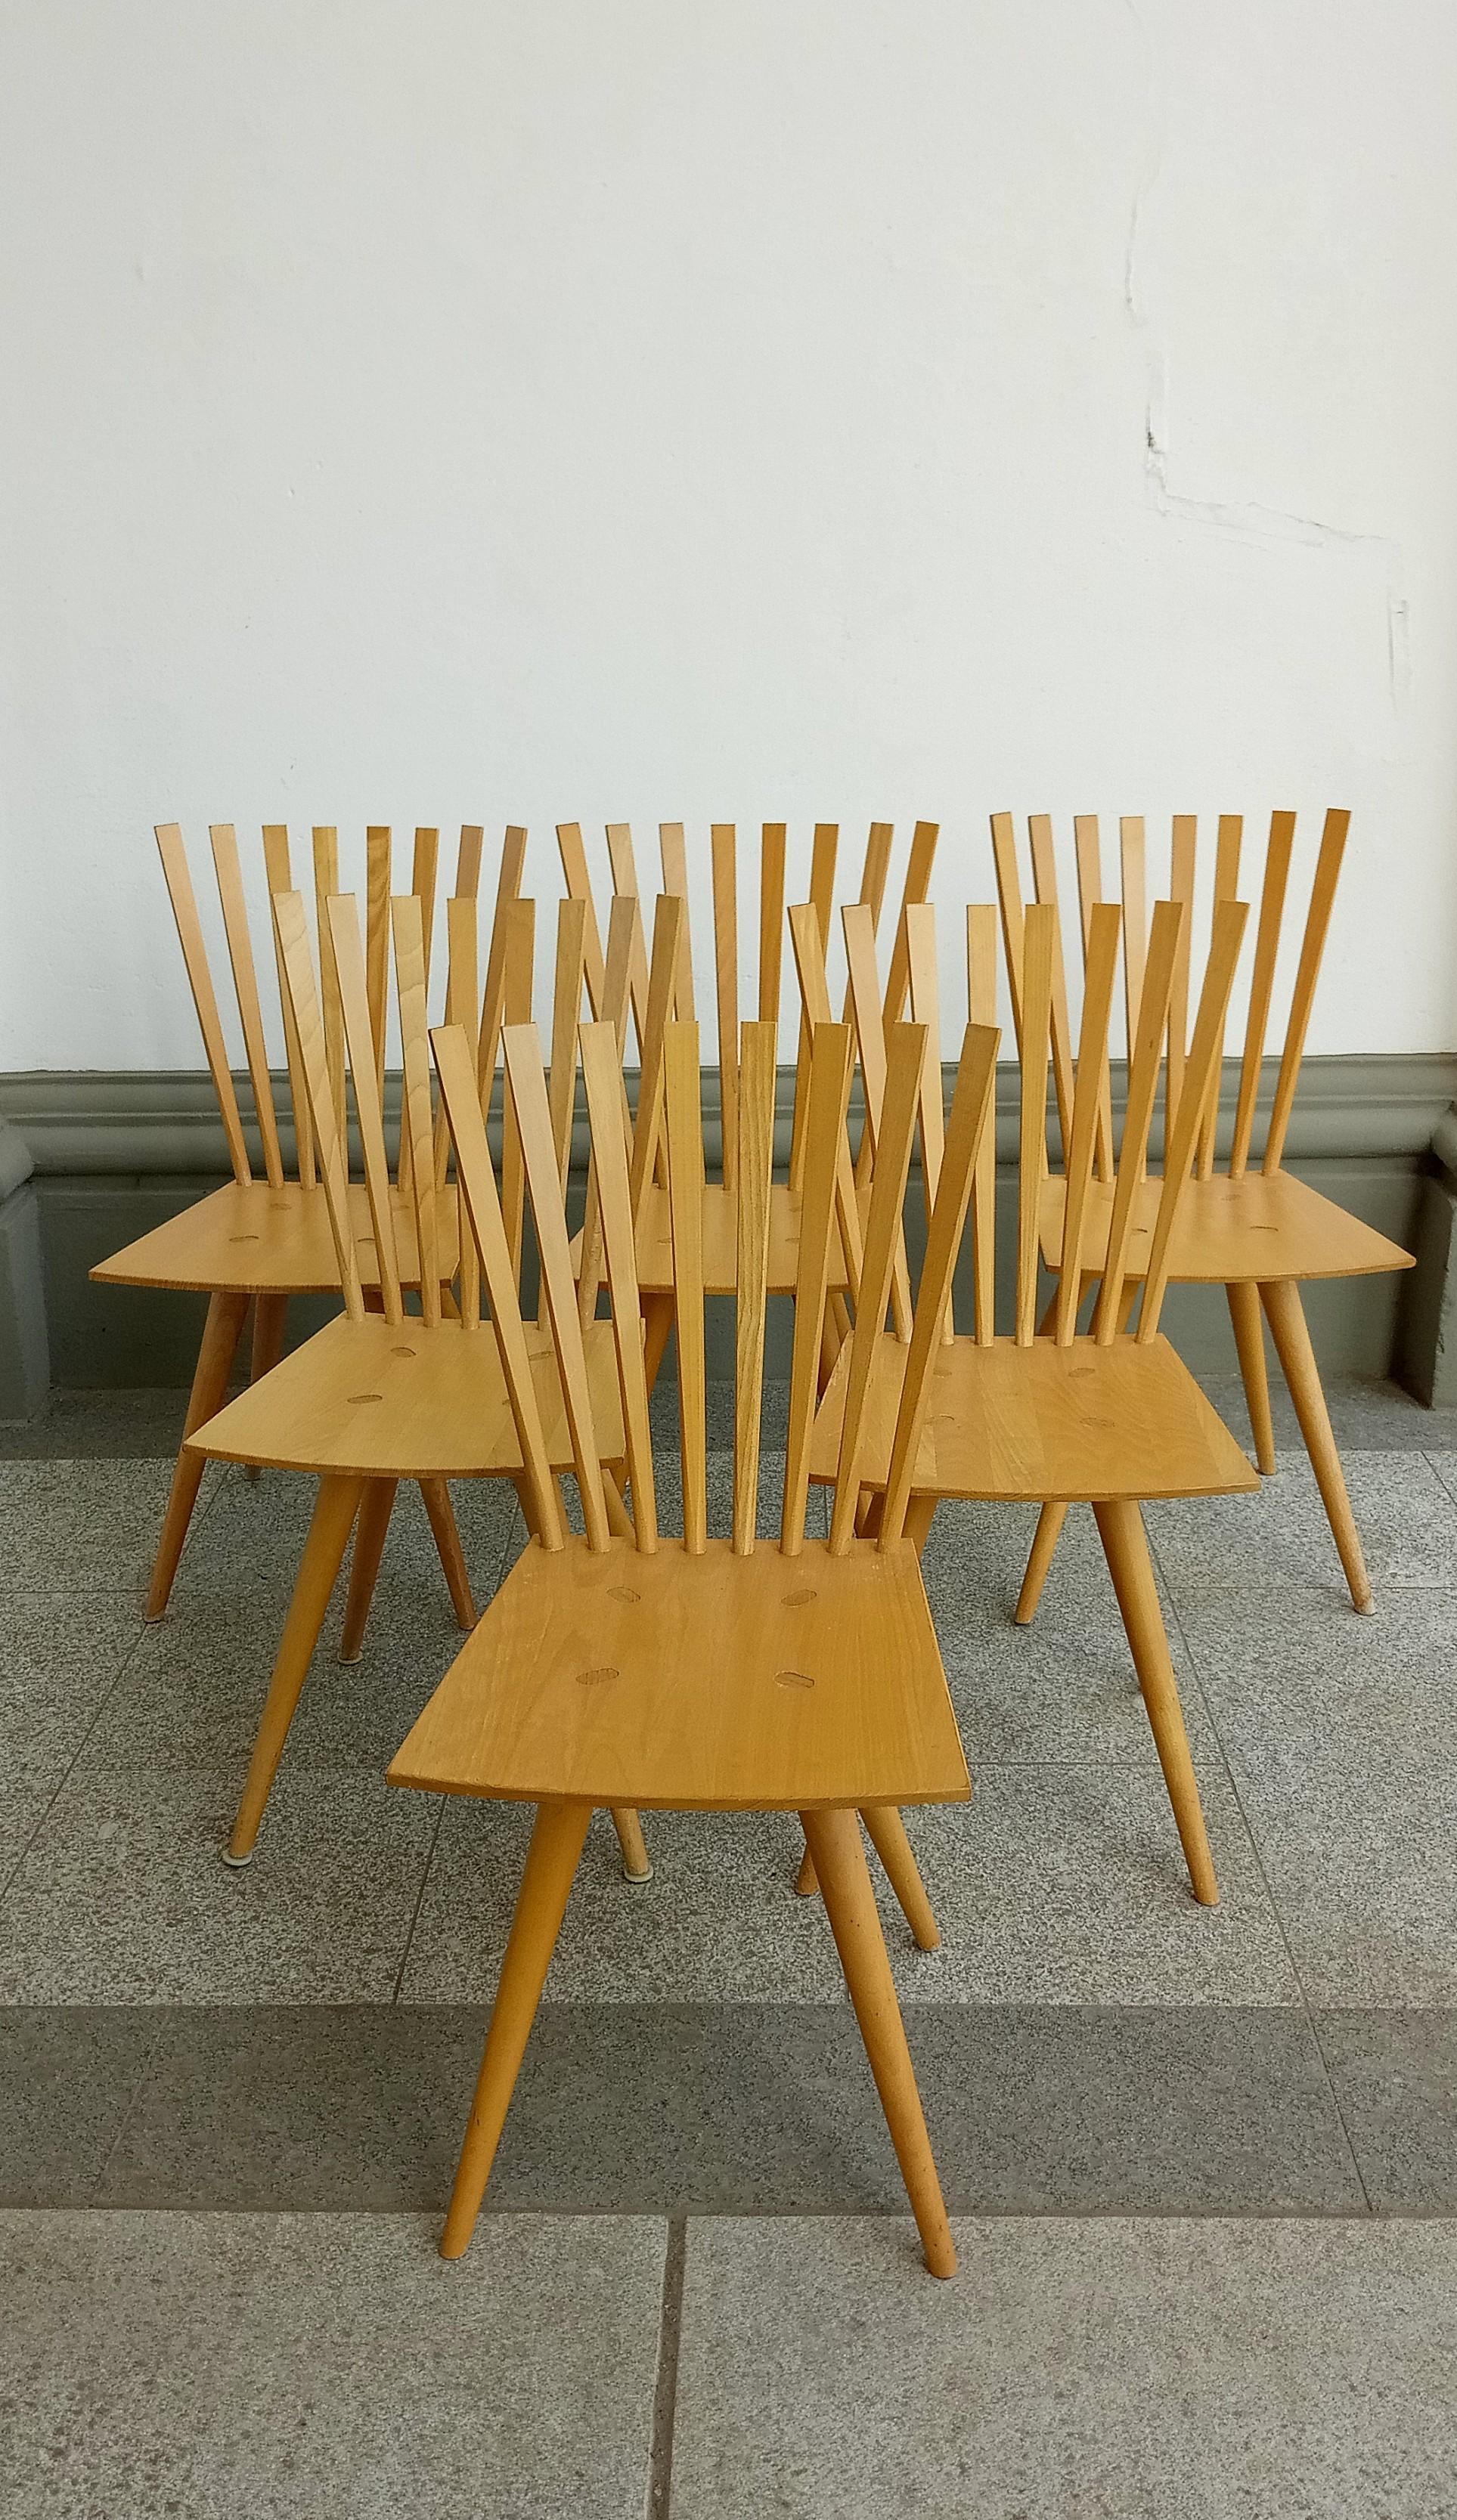 ein Satz von sechs skulpturalen Stühlen von Foersom & Hiort_Lorenenzen für Fredericia
in gebrauchtem Zustand. Einige Stühle weisen kleine Flecken auf.